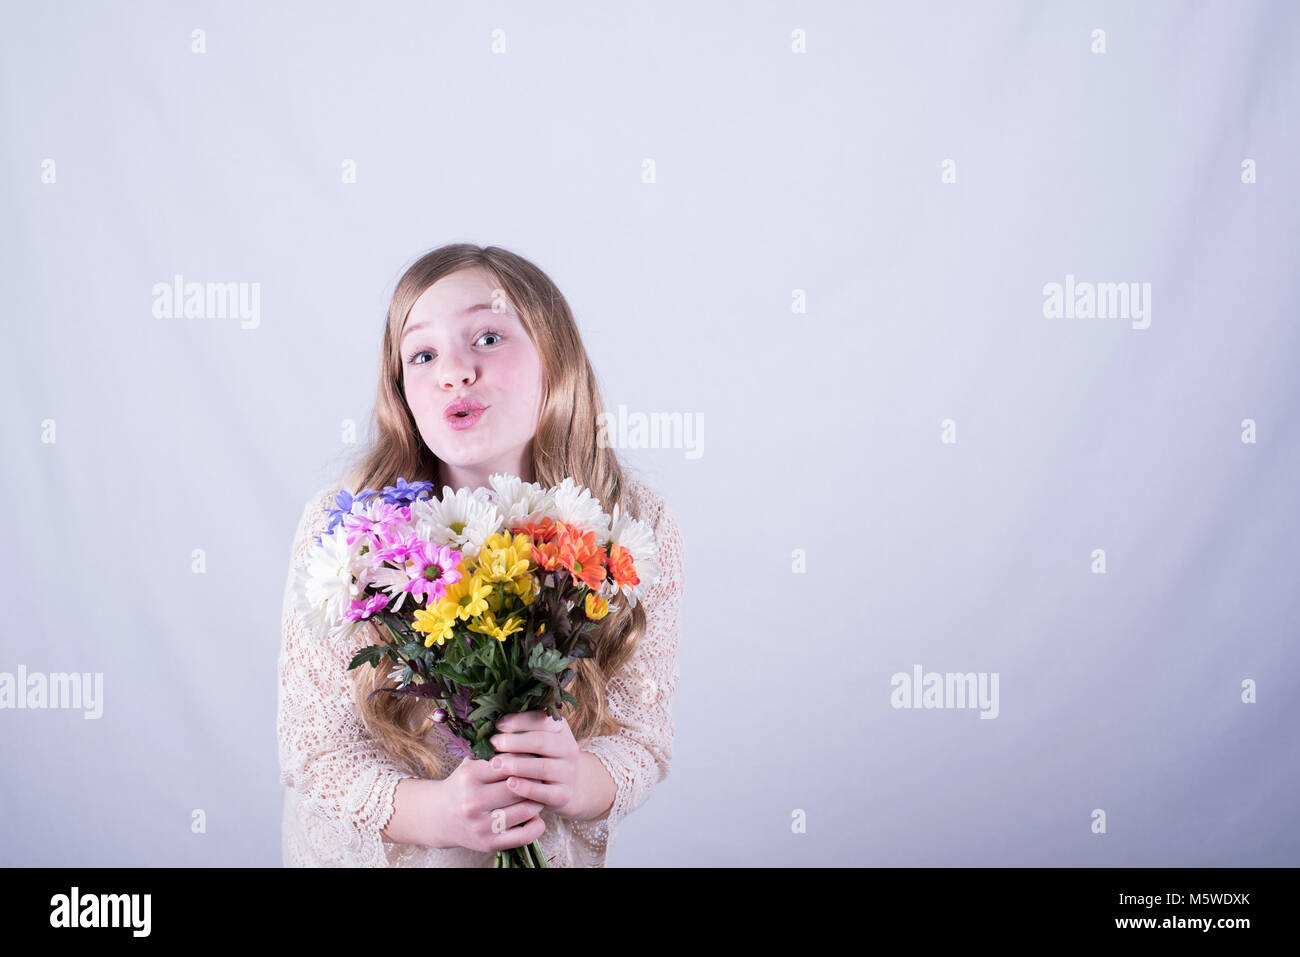 Der 12-jährige Mädchen mit langen blonden Haaren, schmutzig, bunten Strauß von Gänseblümchen mit Bewunderung vor weißem Hintergrund Stockfoto